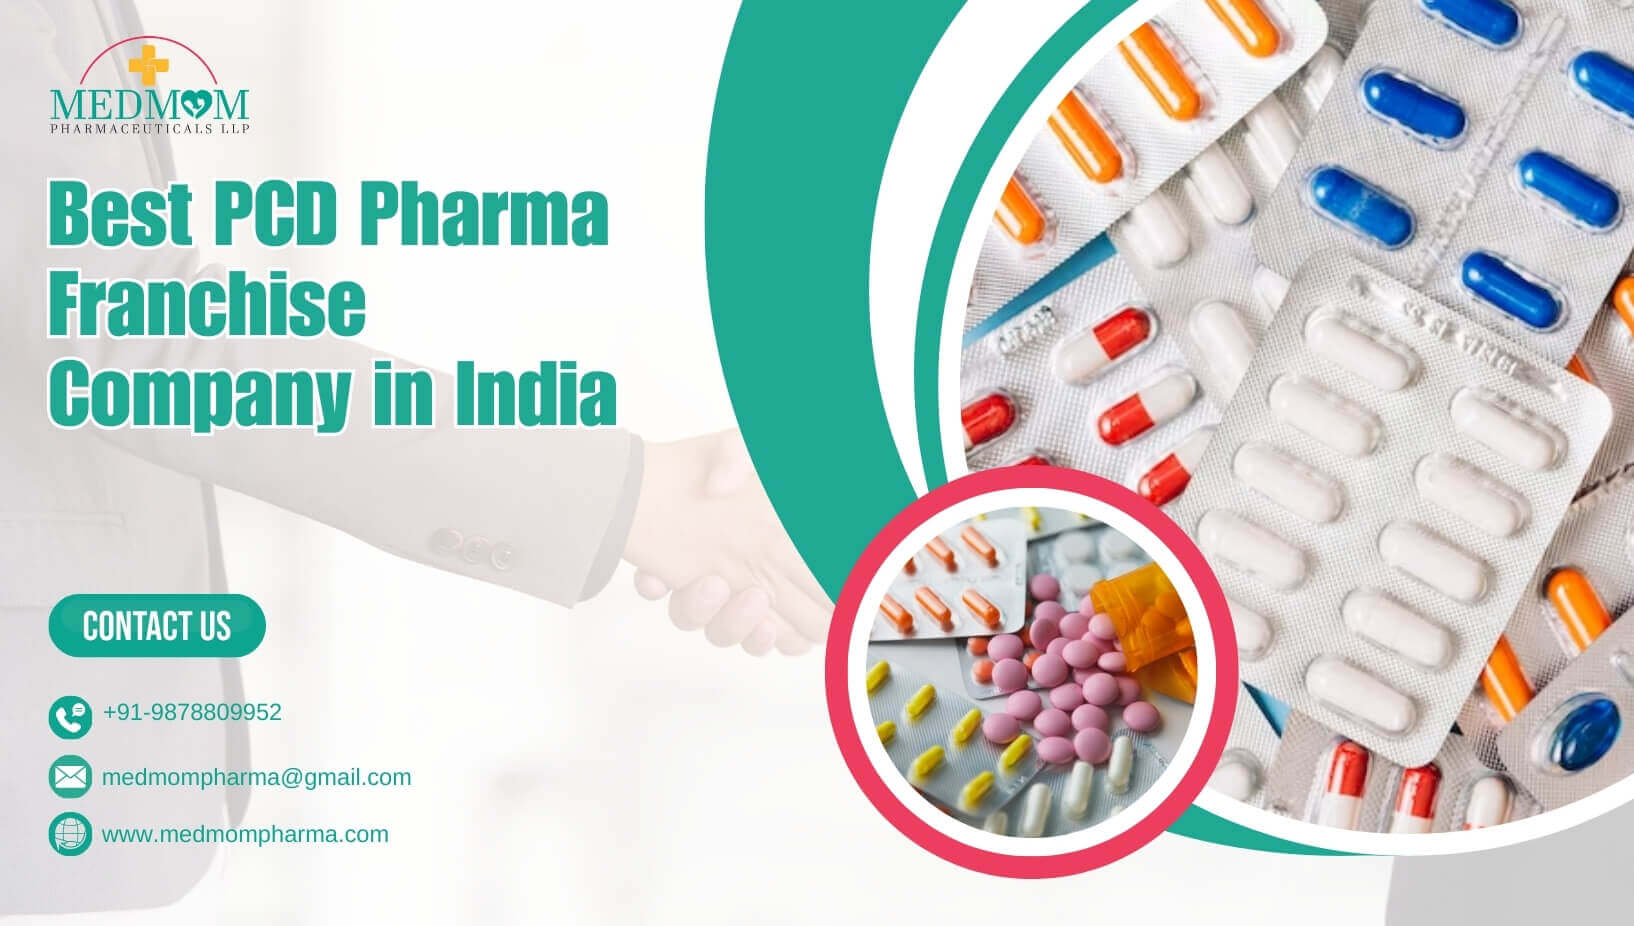 Alna biotech | Top PCD Pharma Franchise Company in India